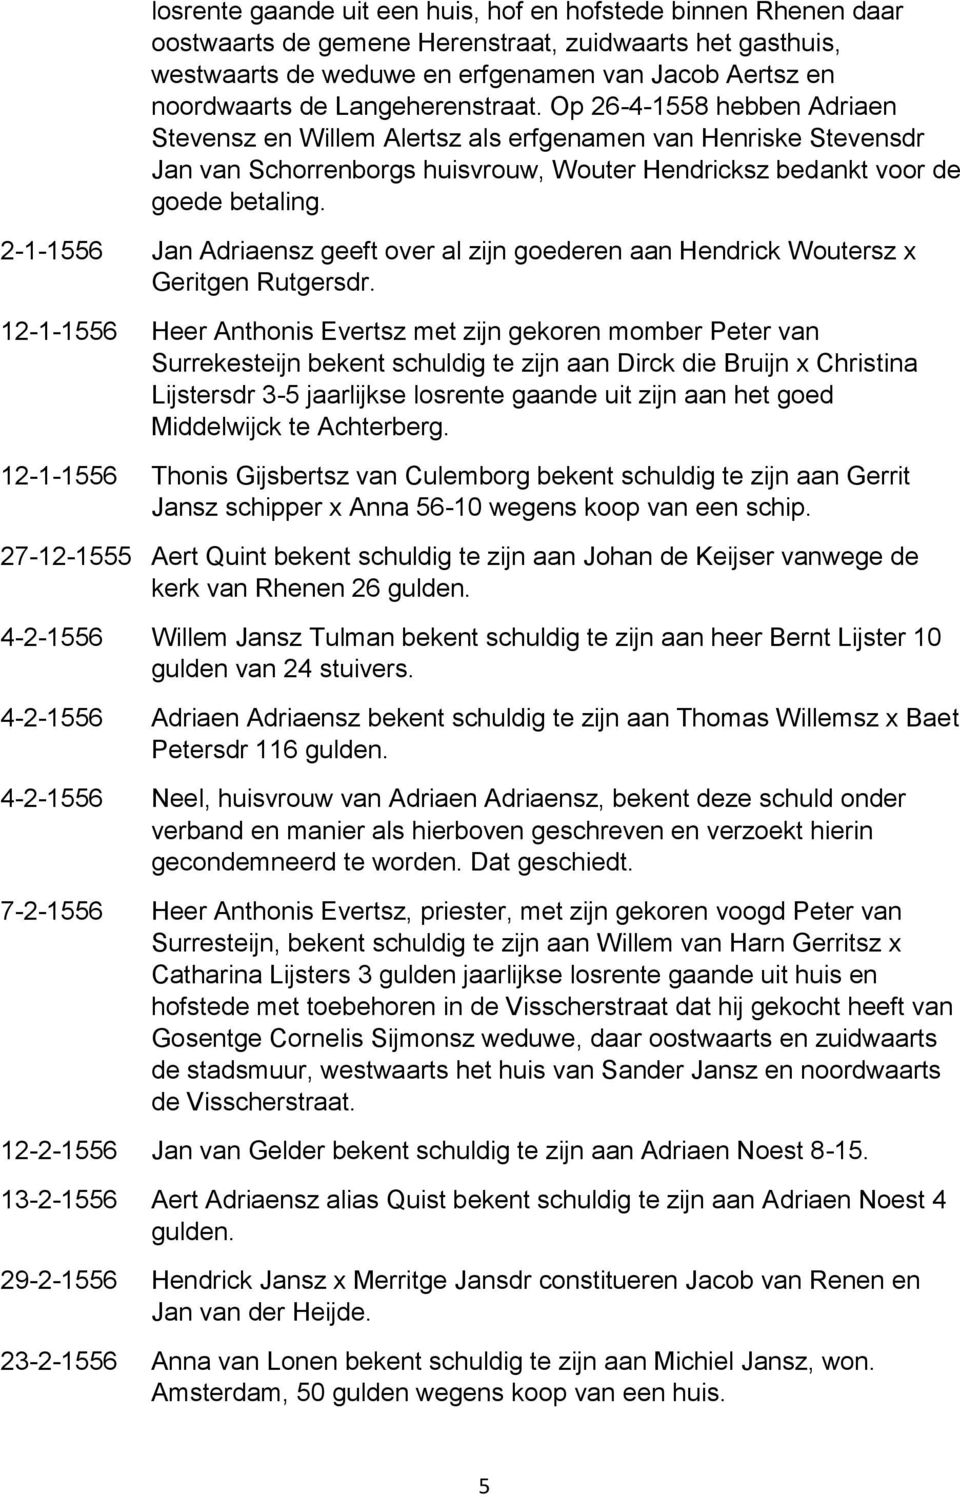 2-1-1556 Jan Adriaensz geeft over al zijn goederen aan Hendrick Woutersz x Geritgen Rutgersdr.